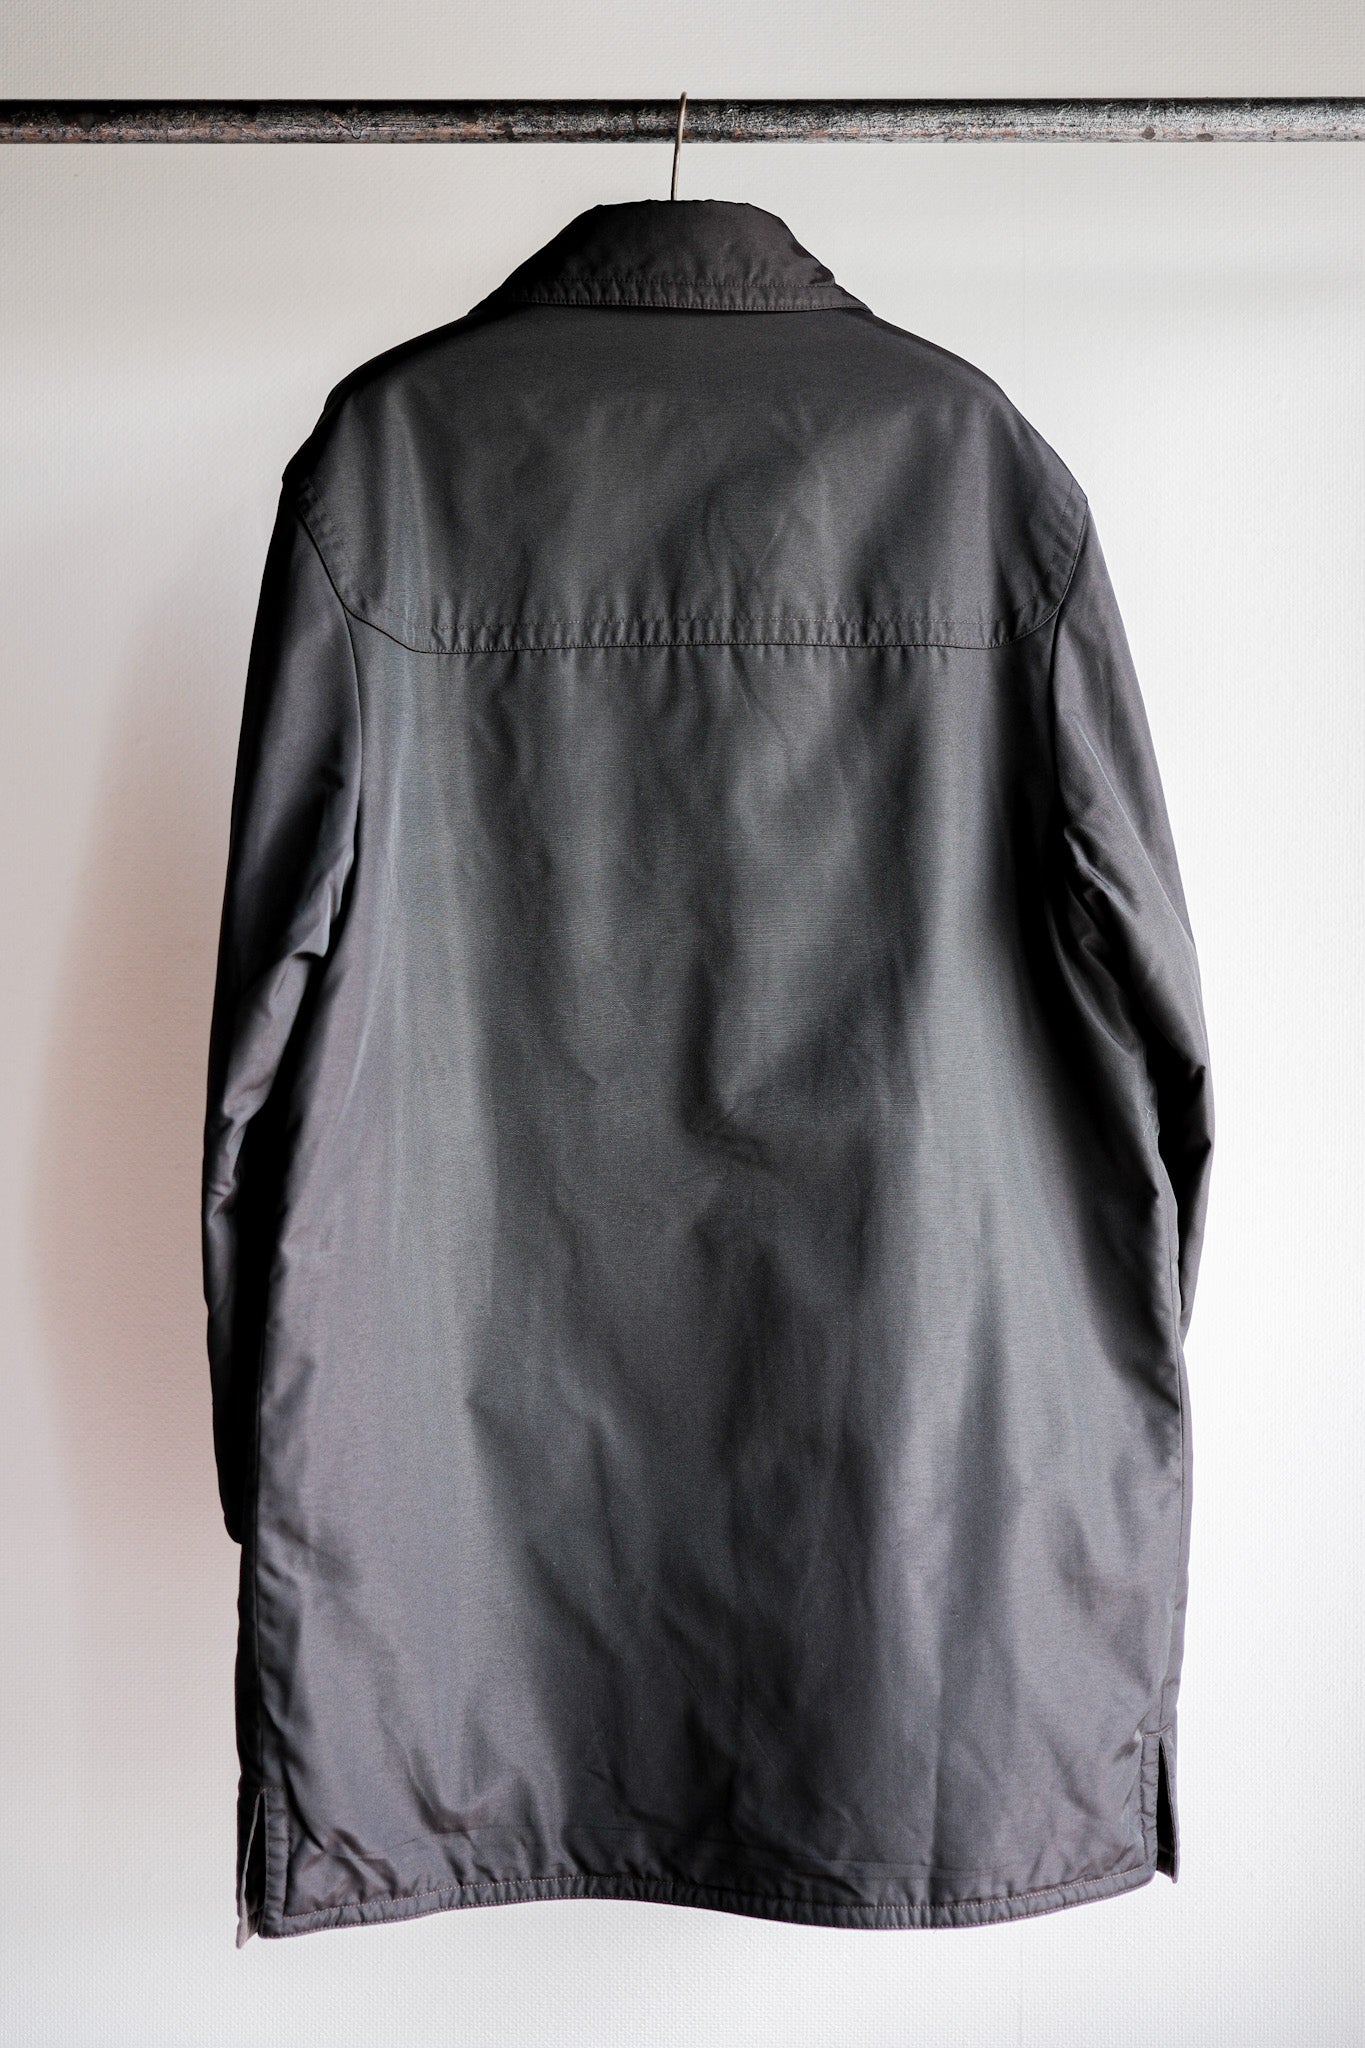 [~90 年代] 舊愛馬仕巴黎深棕色聚醯胺粗呢大衣尺寸 54